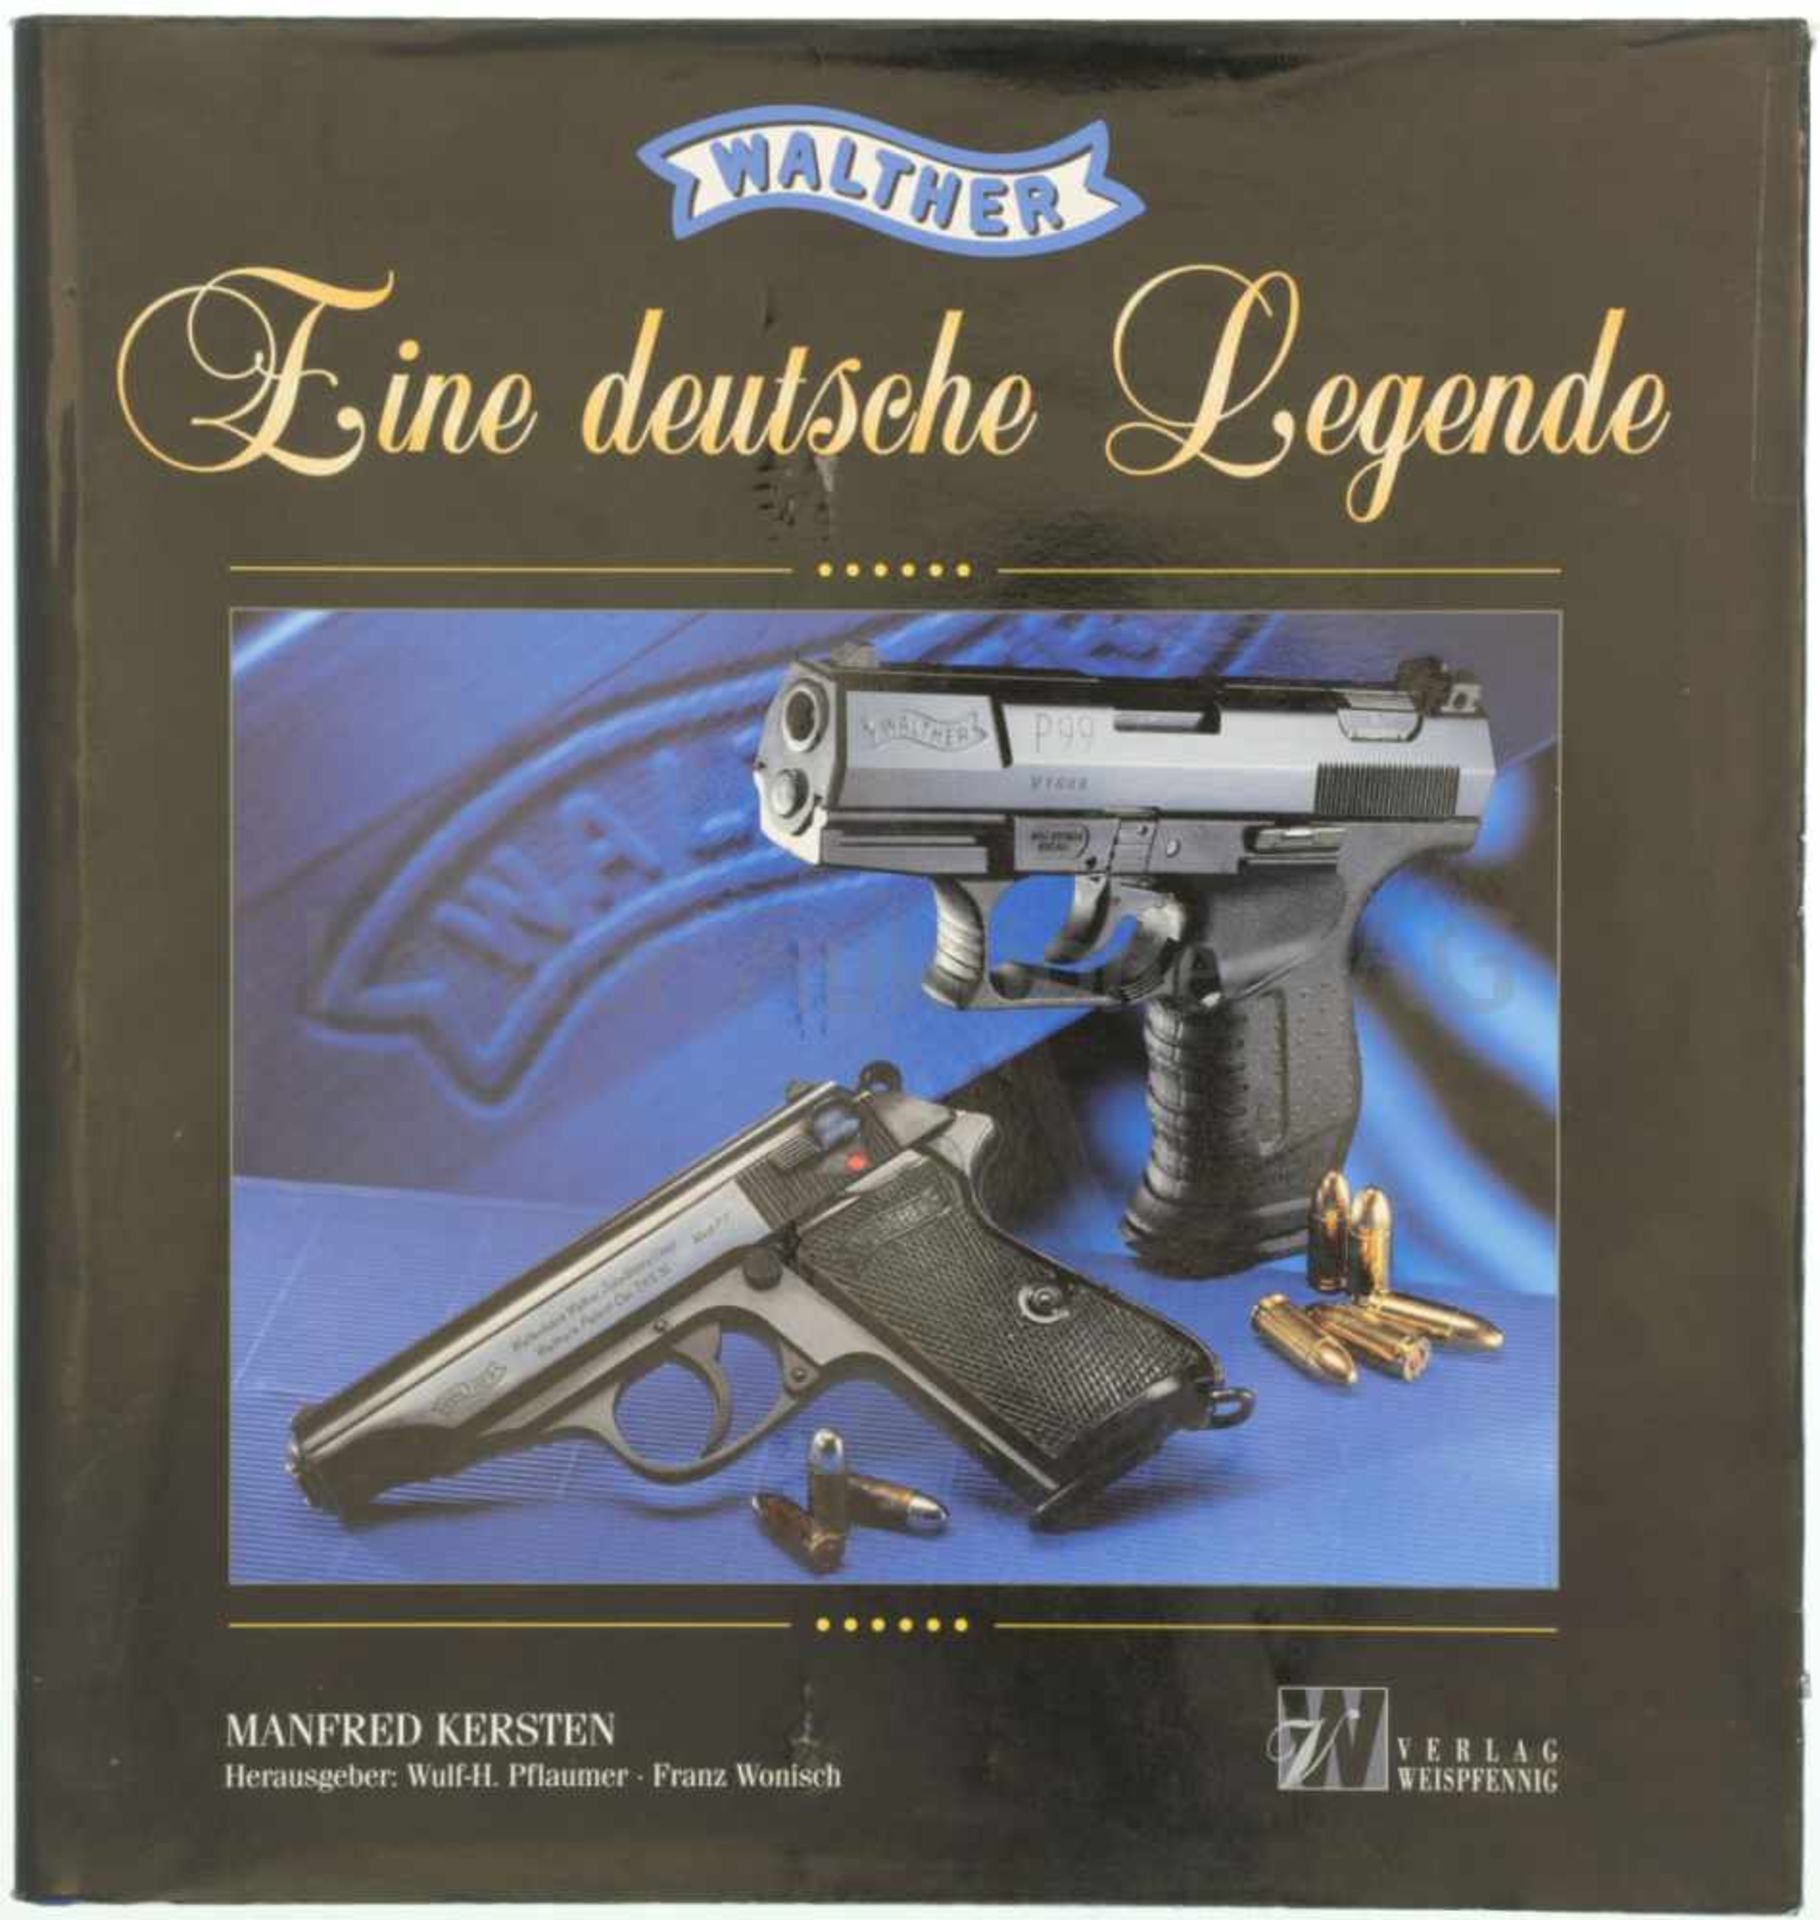 Walther, eine deutsche Legende Auf 400 Seiten wird die Firmengeschichte, die Pistolen, die